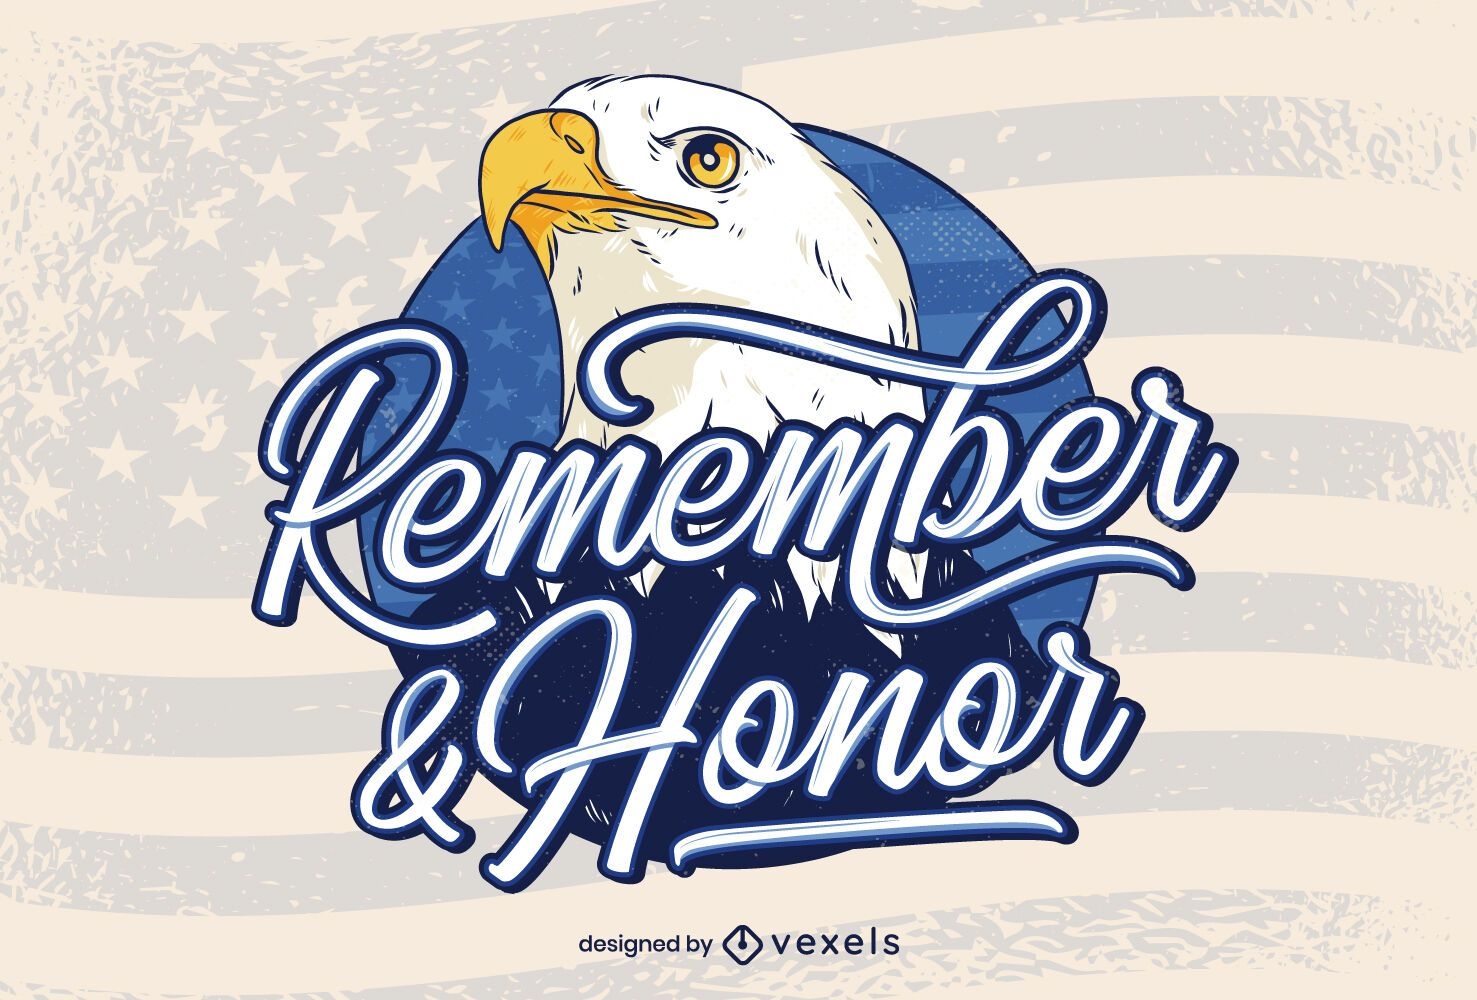 Lembrar e homenagear as letras do dia dos veteranos